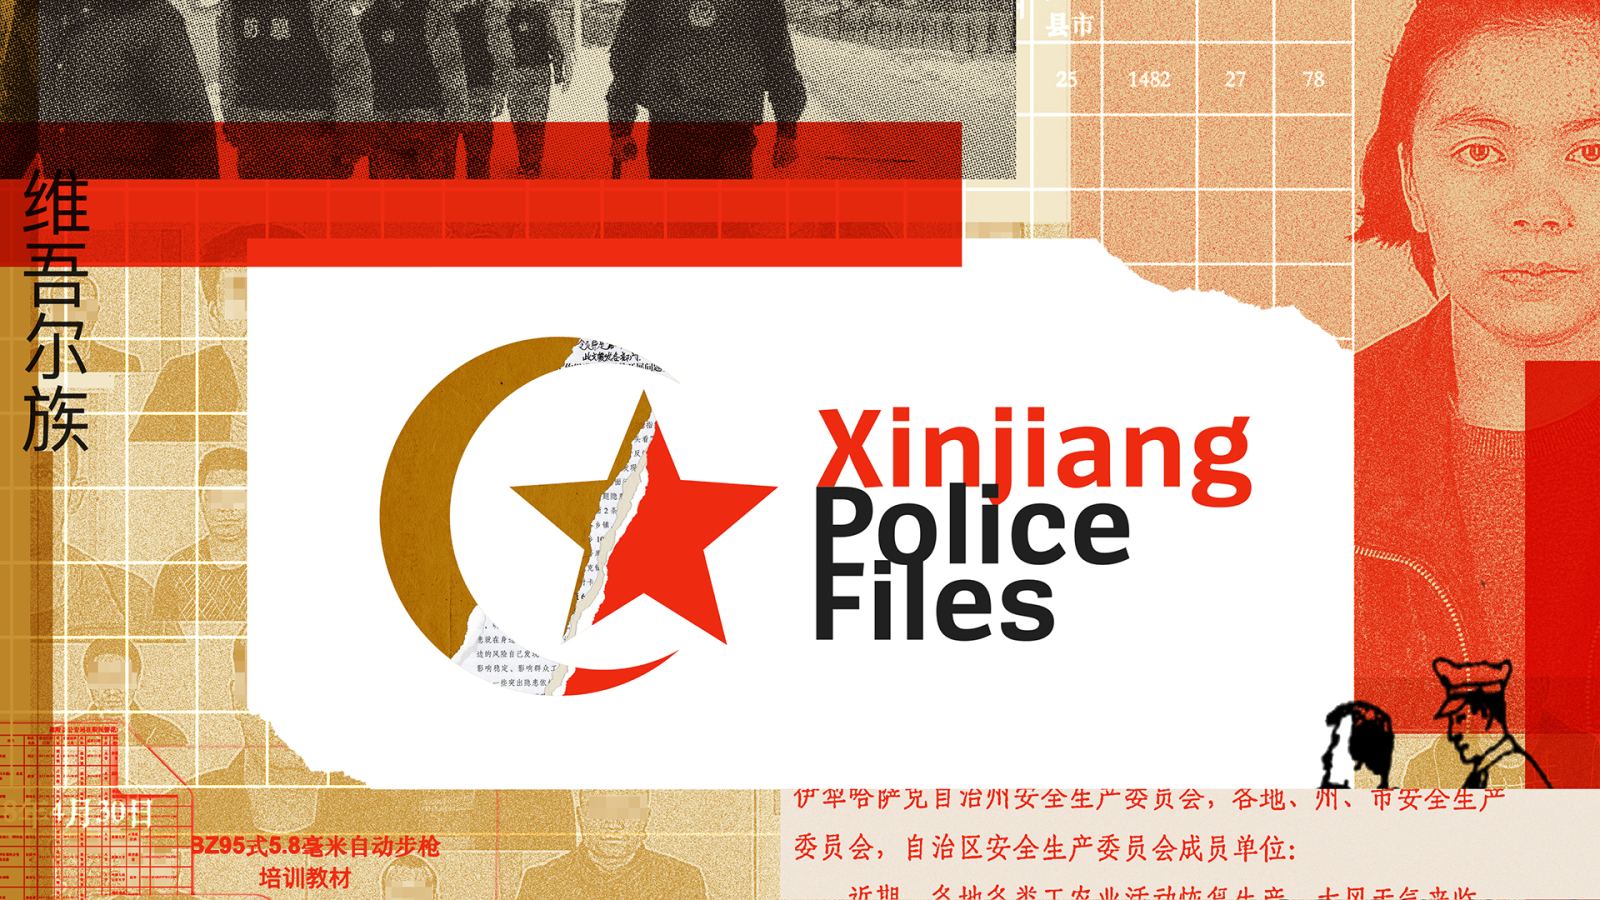 China und die Uiguren: Was steckt hinter den „Xinjiang Police Files“?